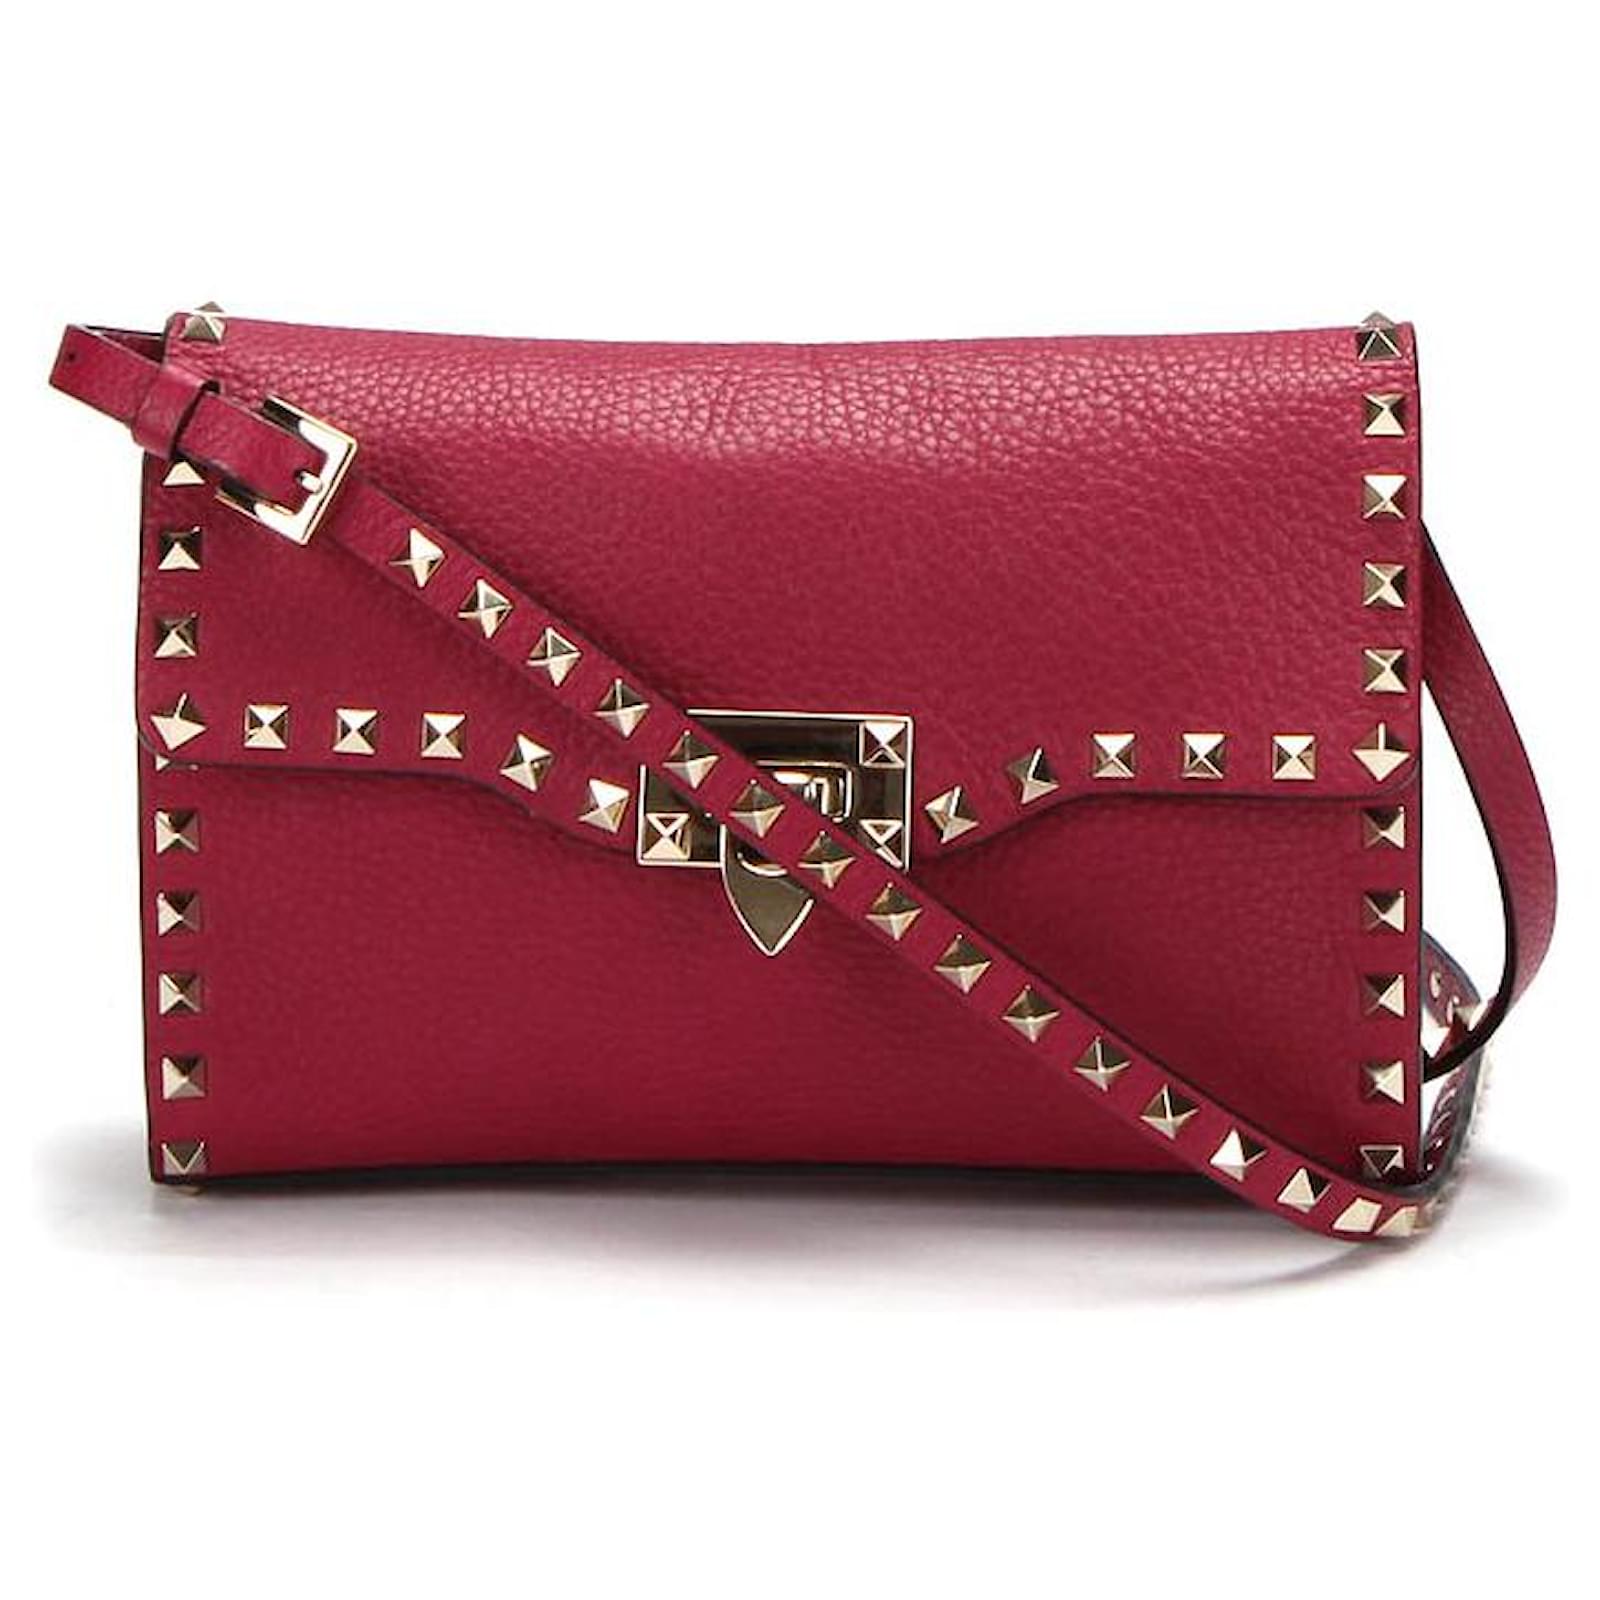 Rockstud 23 Leather Shoulder Bag in Pink - Valentino Garavani